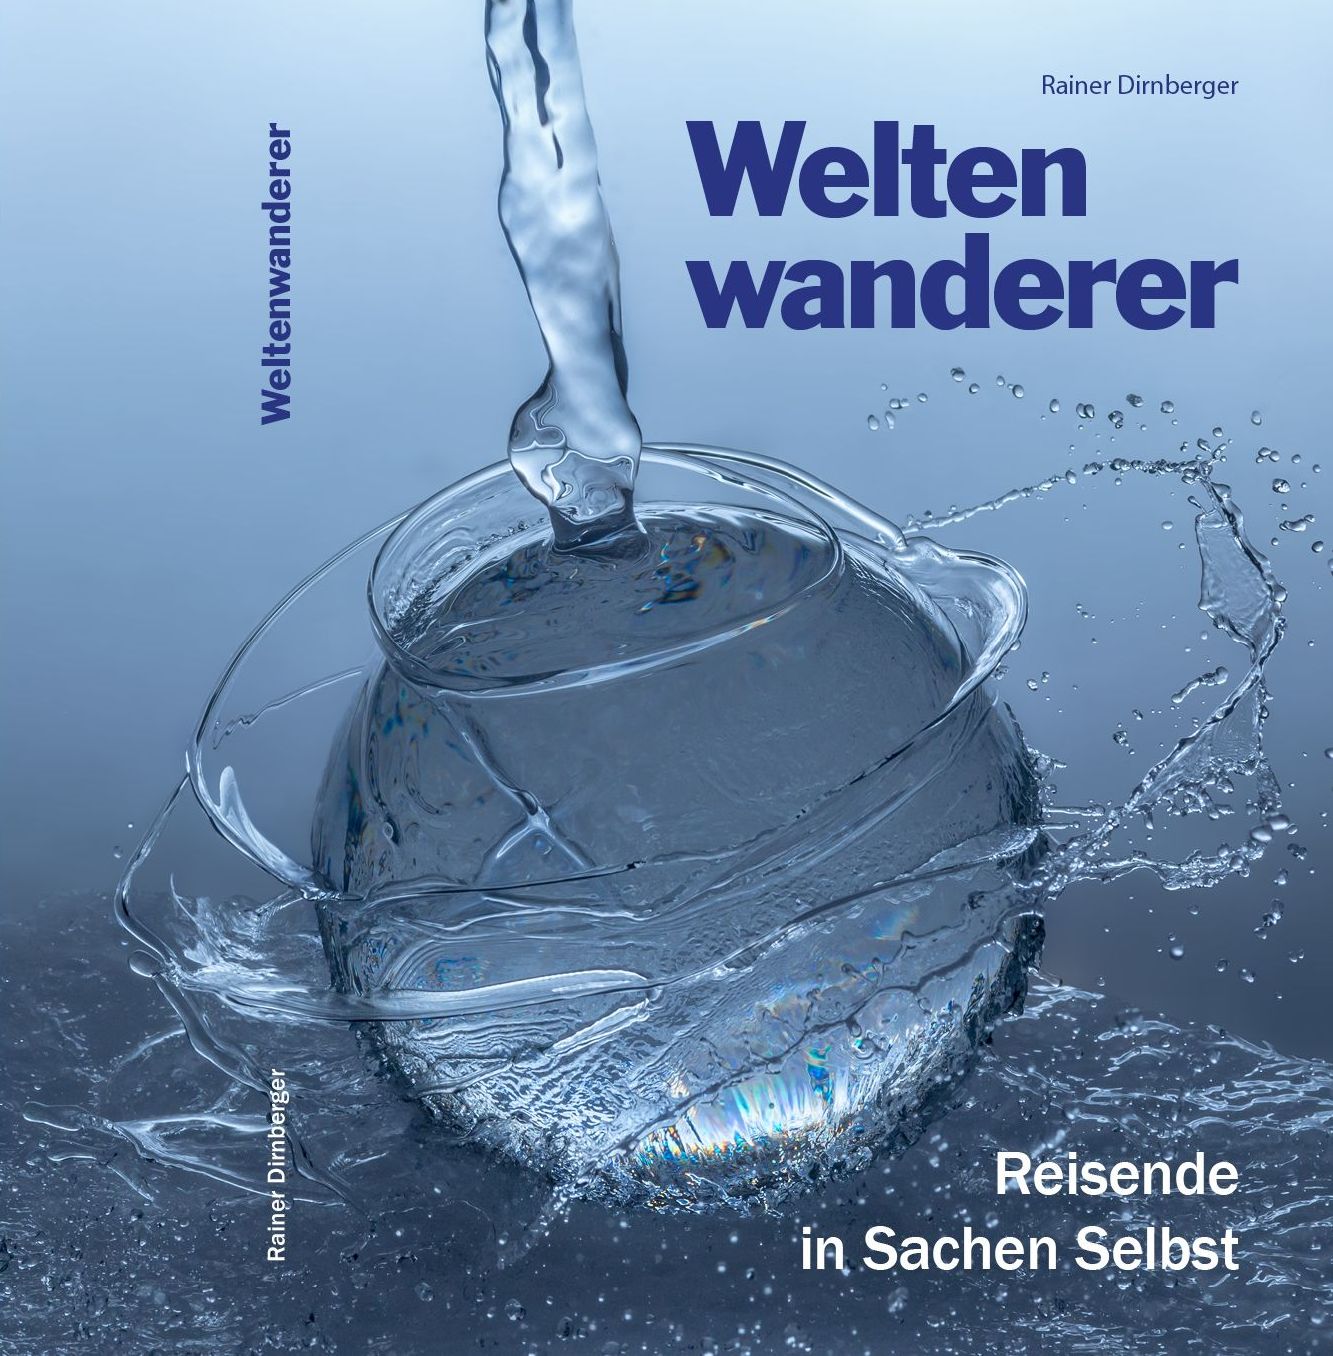 RainerDirnberger_Weltenwanderer_Cover_BOD_PRINT2cbild.jpg